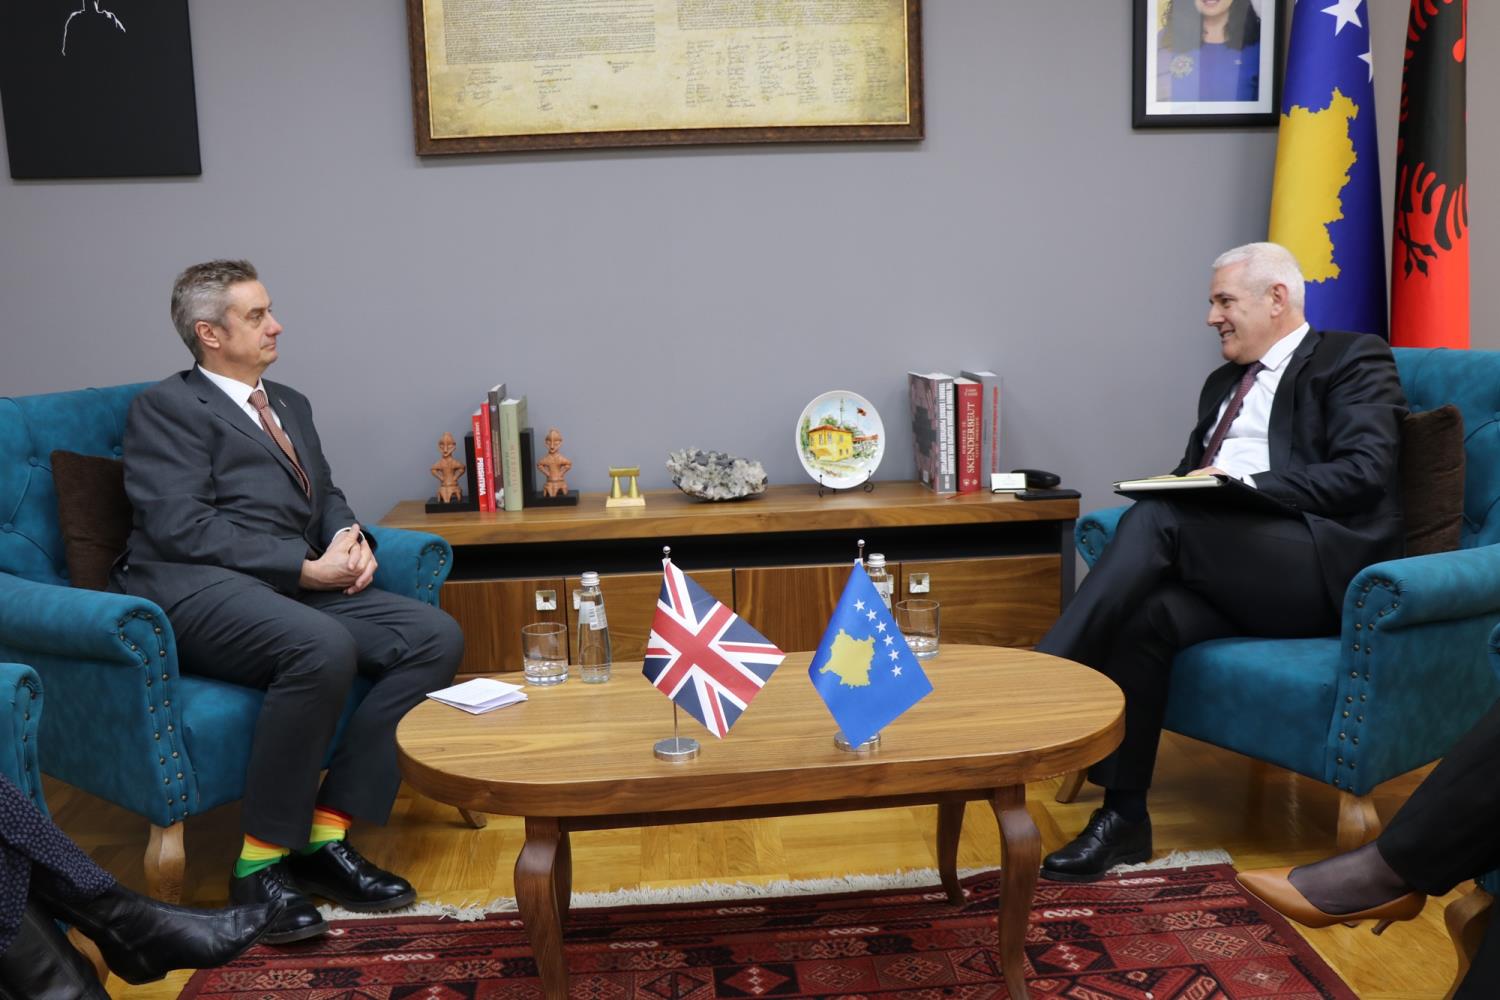  Ministri i Punëve të Brendshme Xhelal Sveçla priti në takimin e parë zyrtar Ambasadorin e ri të Mbretërisë së Bashkuar, Jonathan Hargreaves